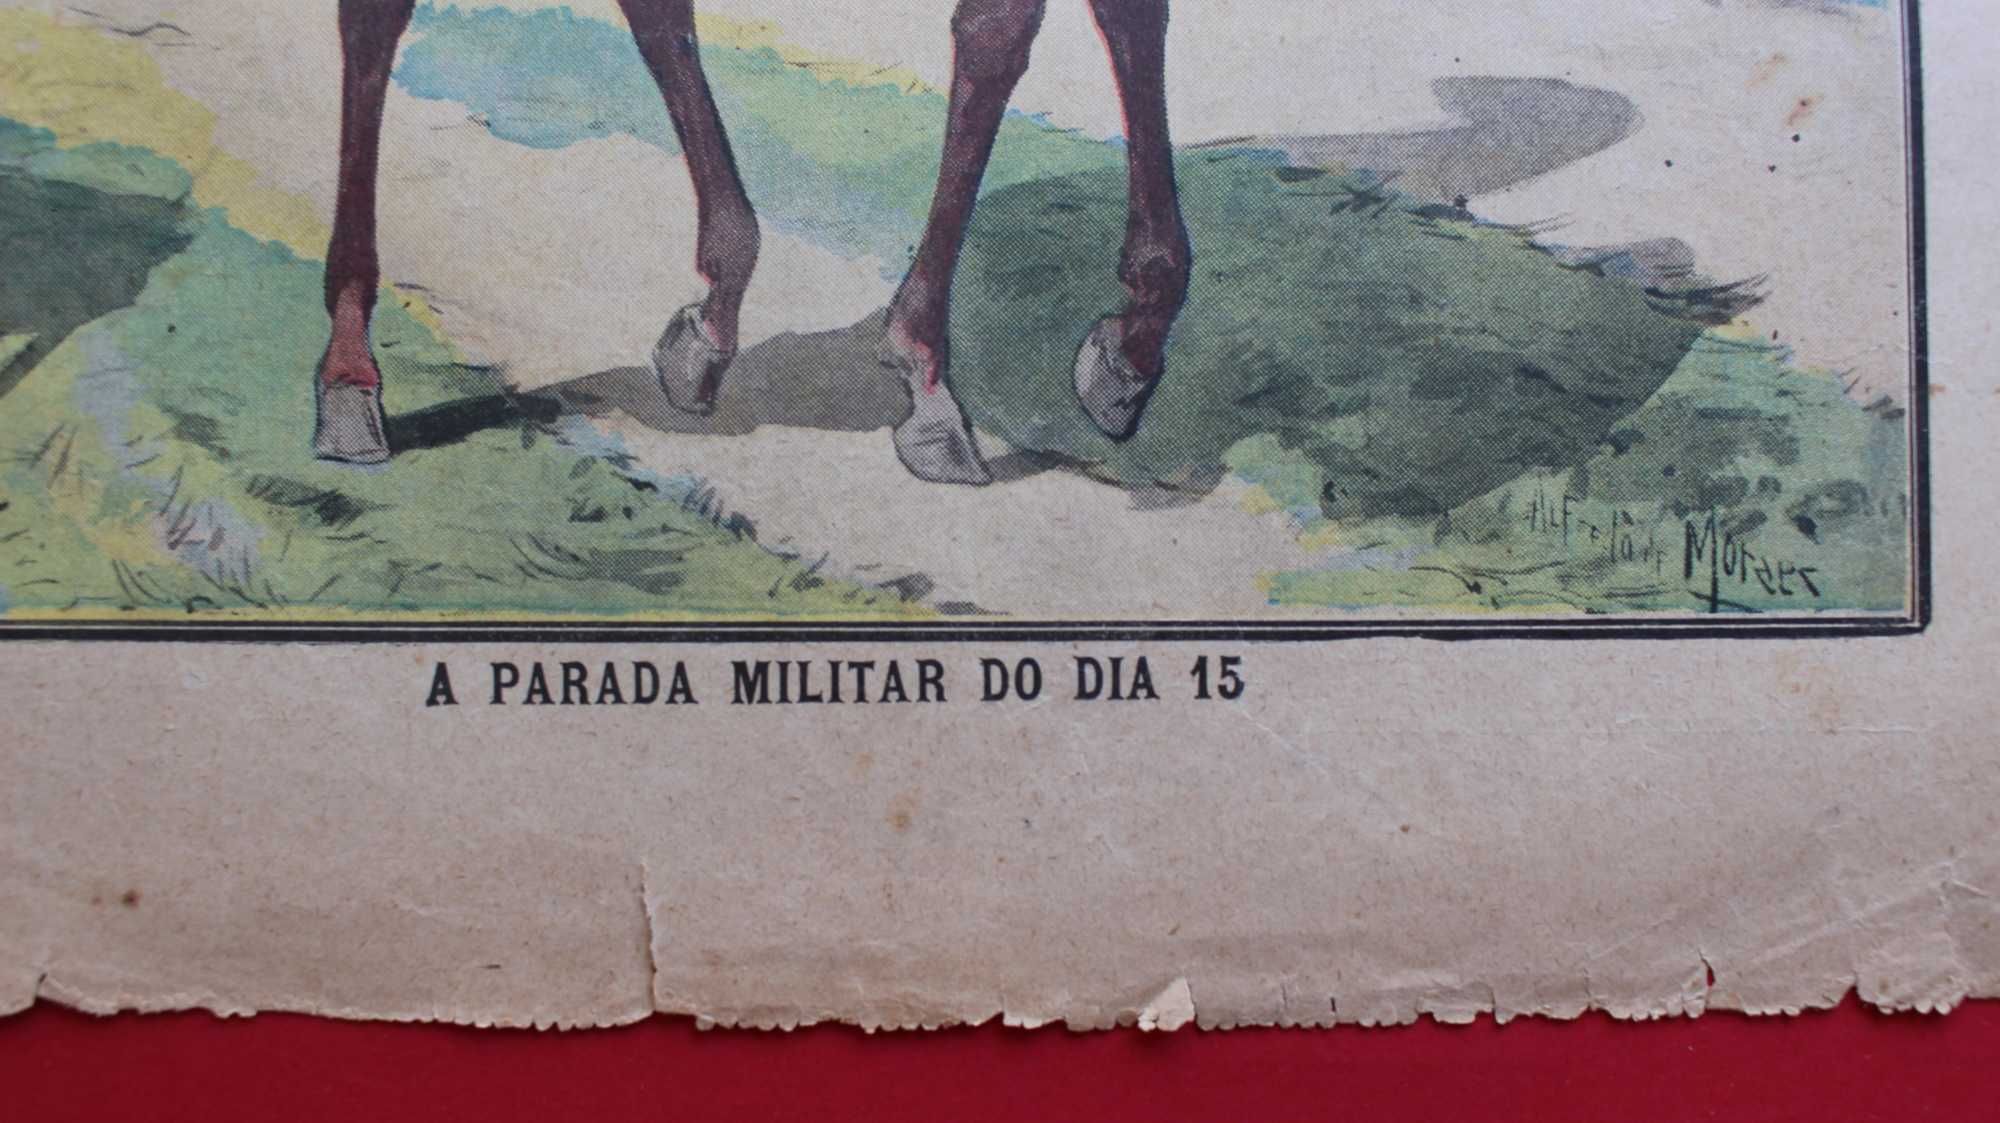 Centenário Guerra Peninsular 1908 D. Manuel II parada militar